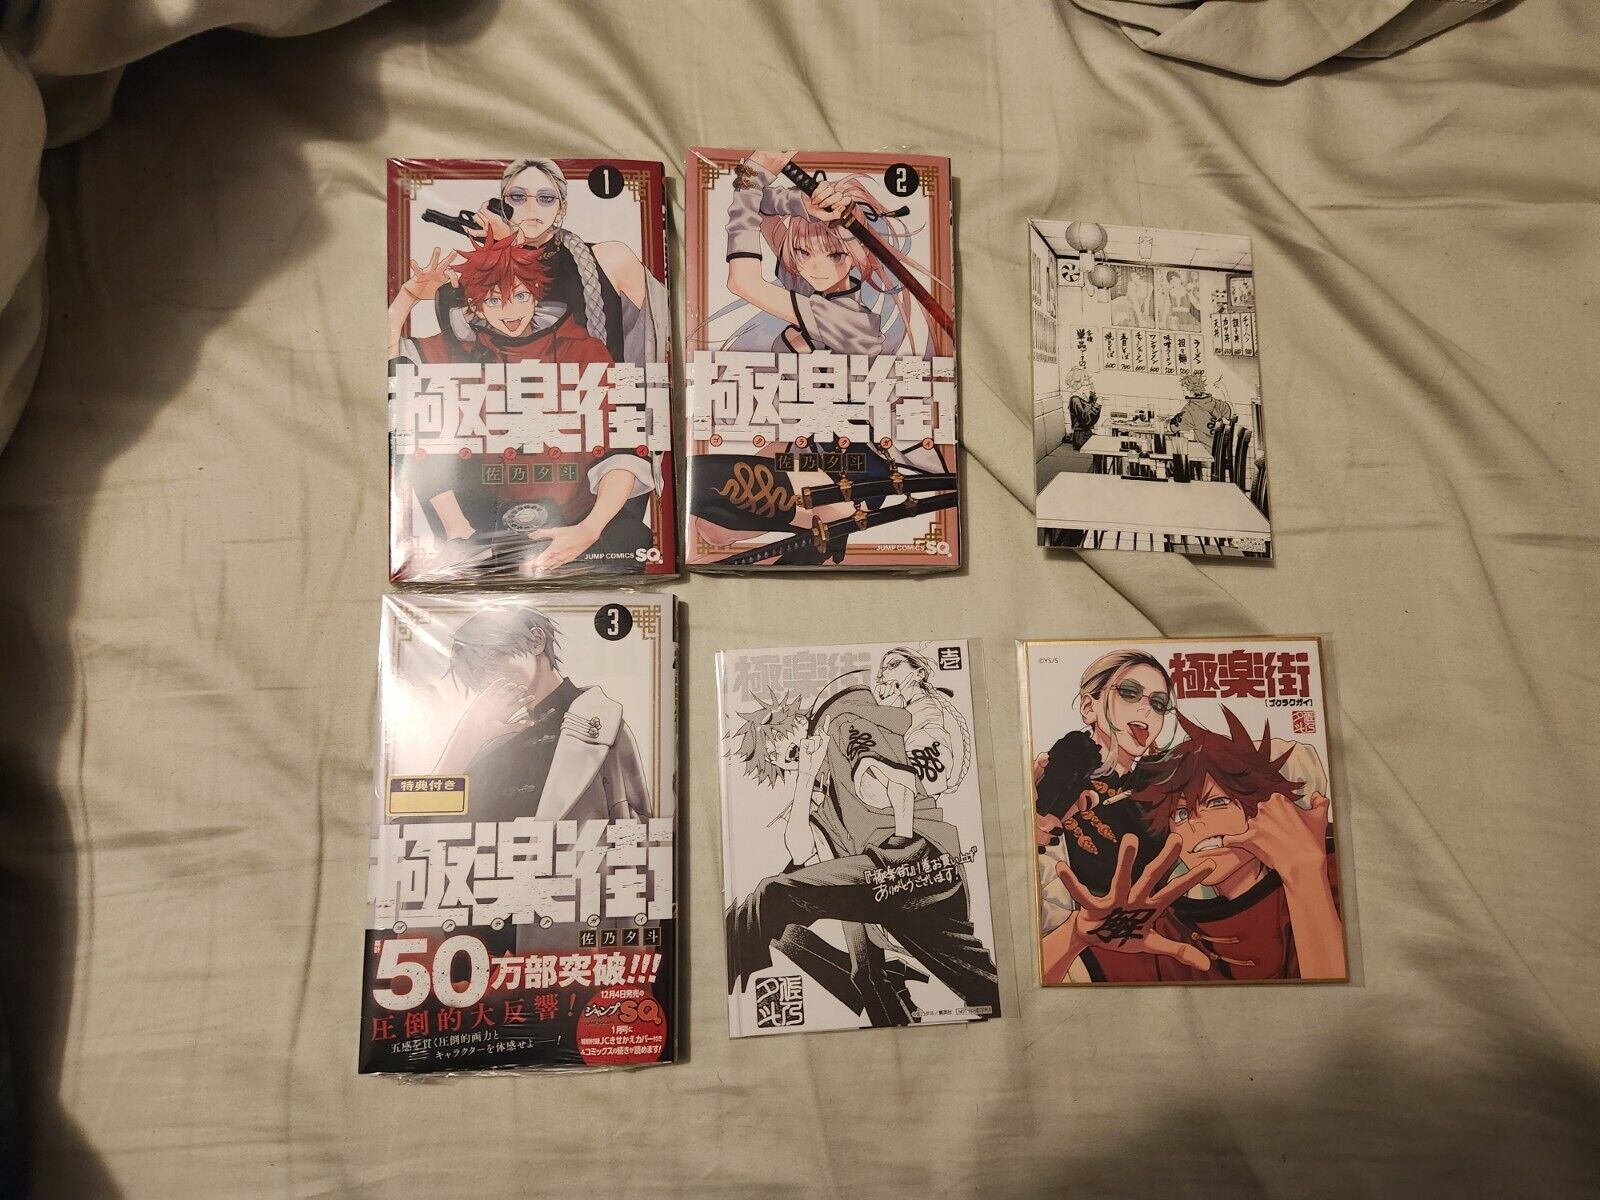 GOKURAKUGAI Vol. 1-3 Manga Japanese version Bonus Art And Rare Jump Card